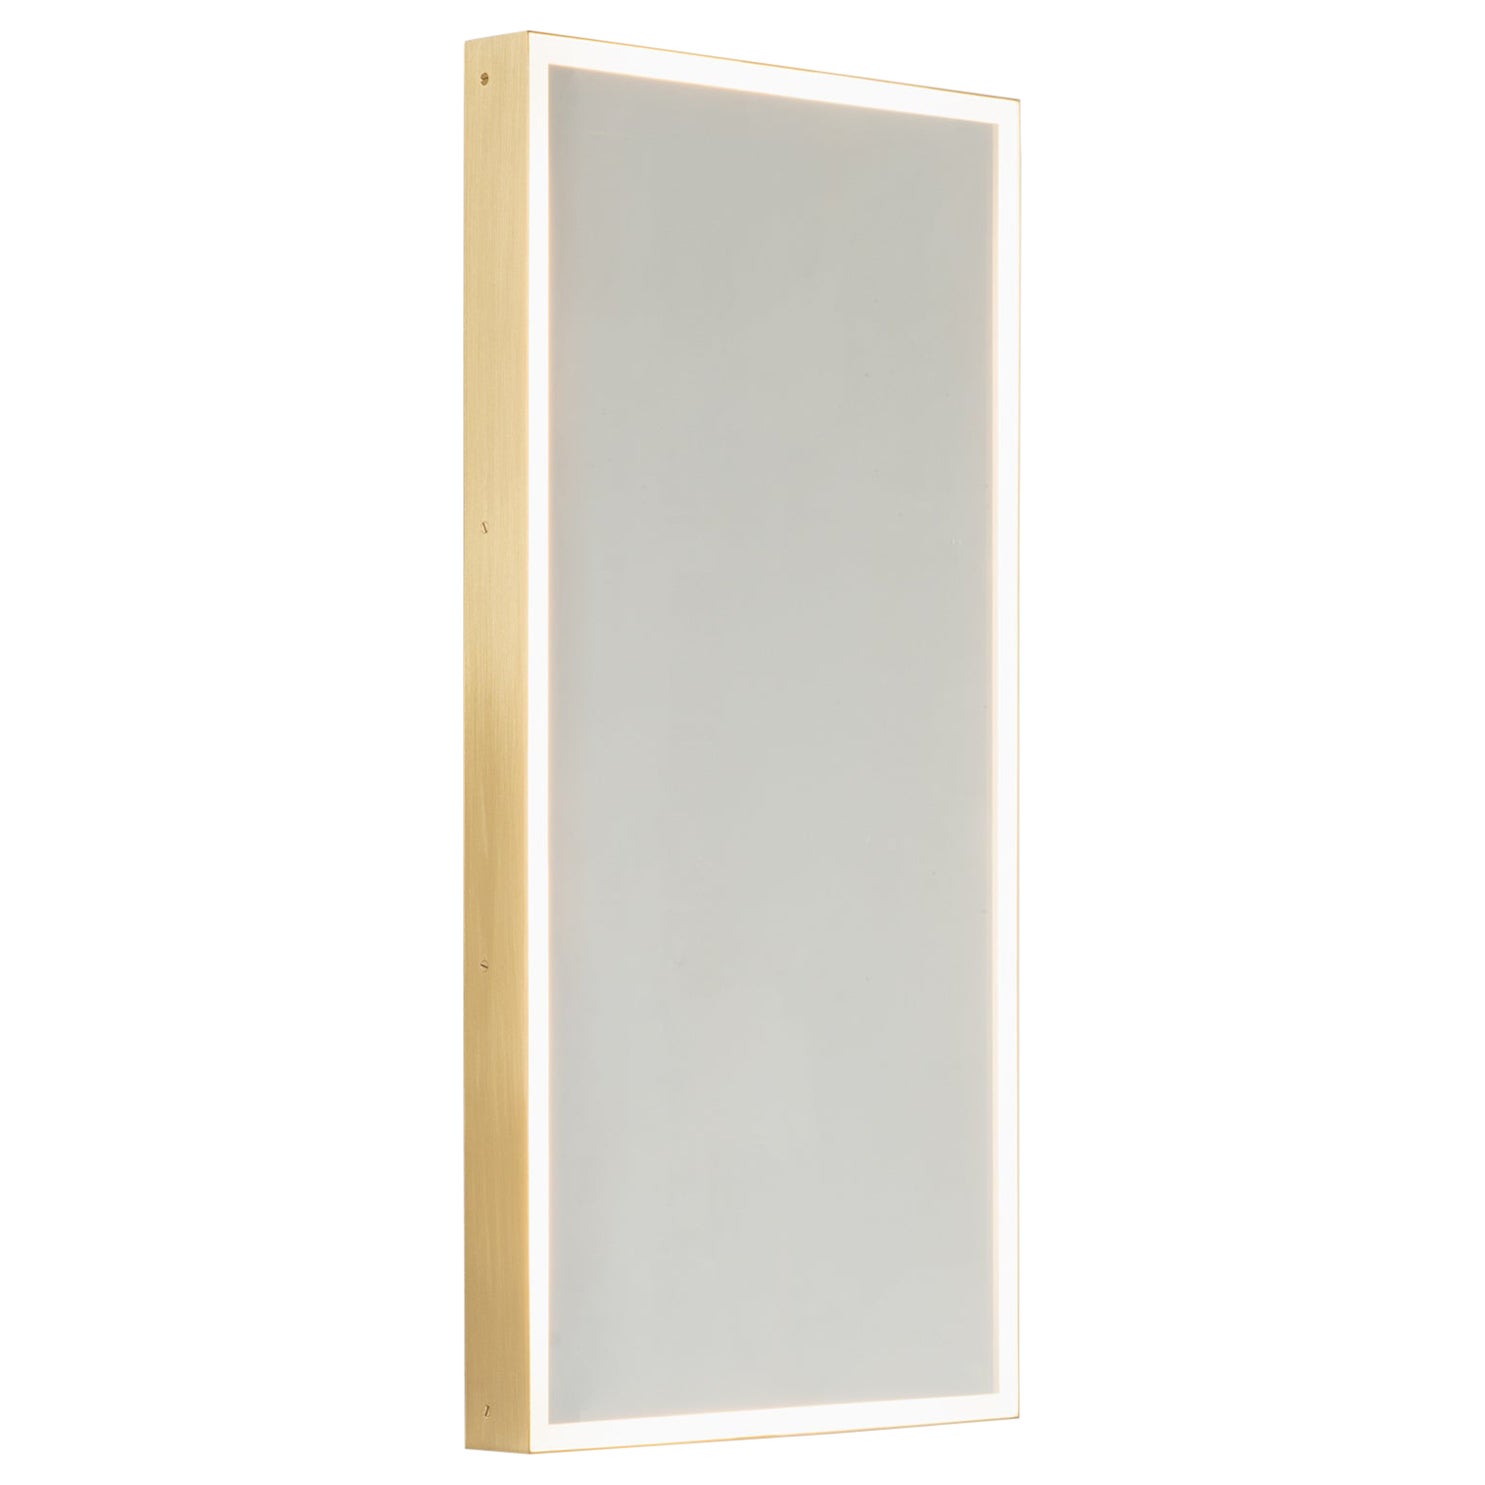 Quadris Rectangular Front Illuminated Contemporary Mirror w Brass Frame, Medium For Sale